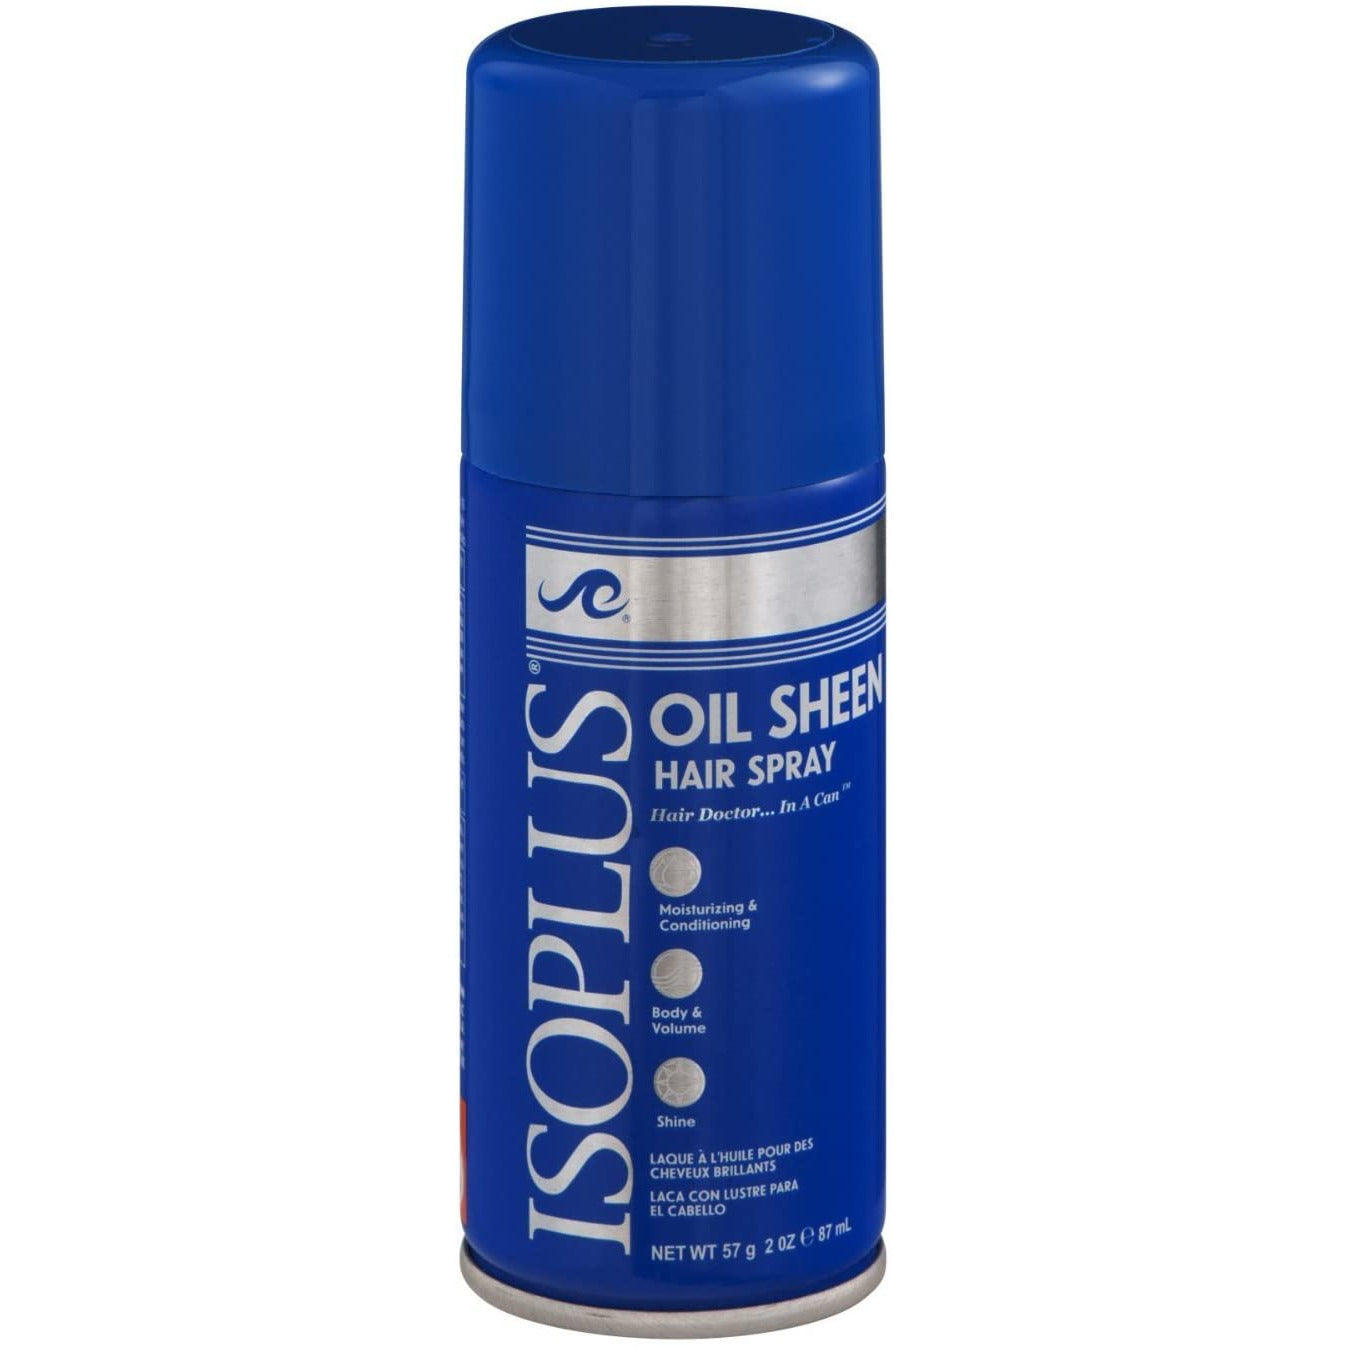 4th Ave Market: Isoplus Hair Spray - Oil Sheen